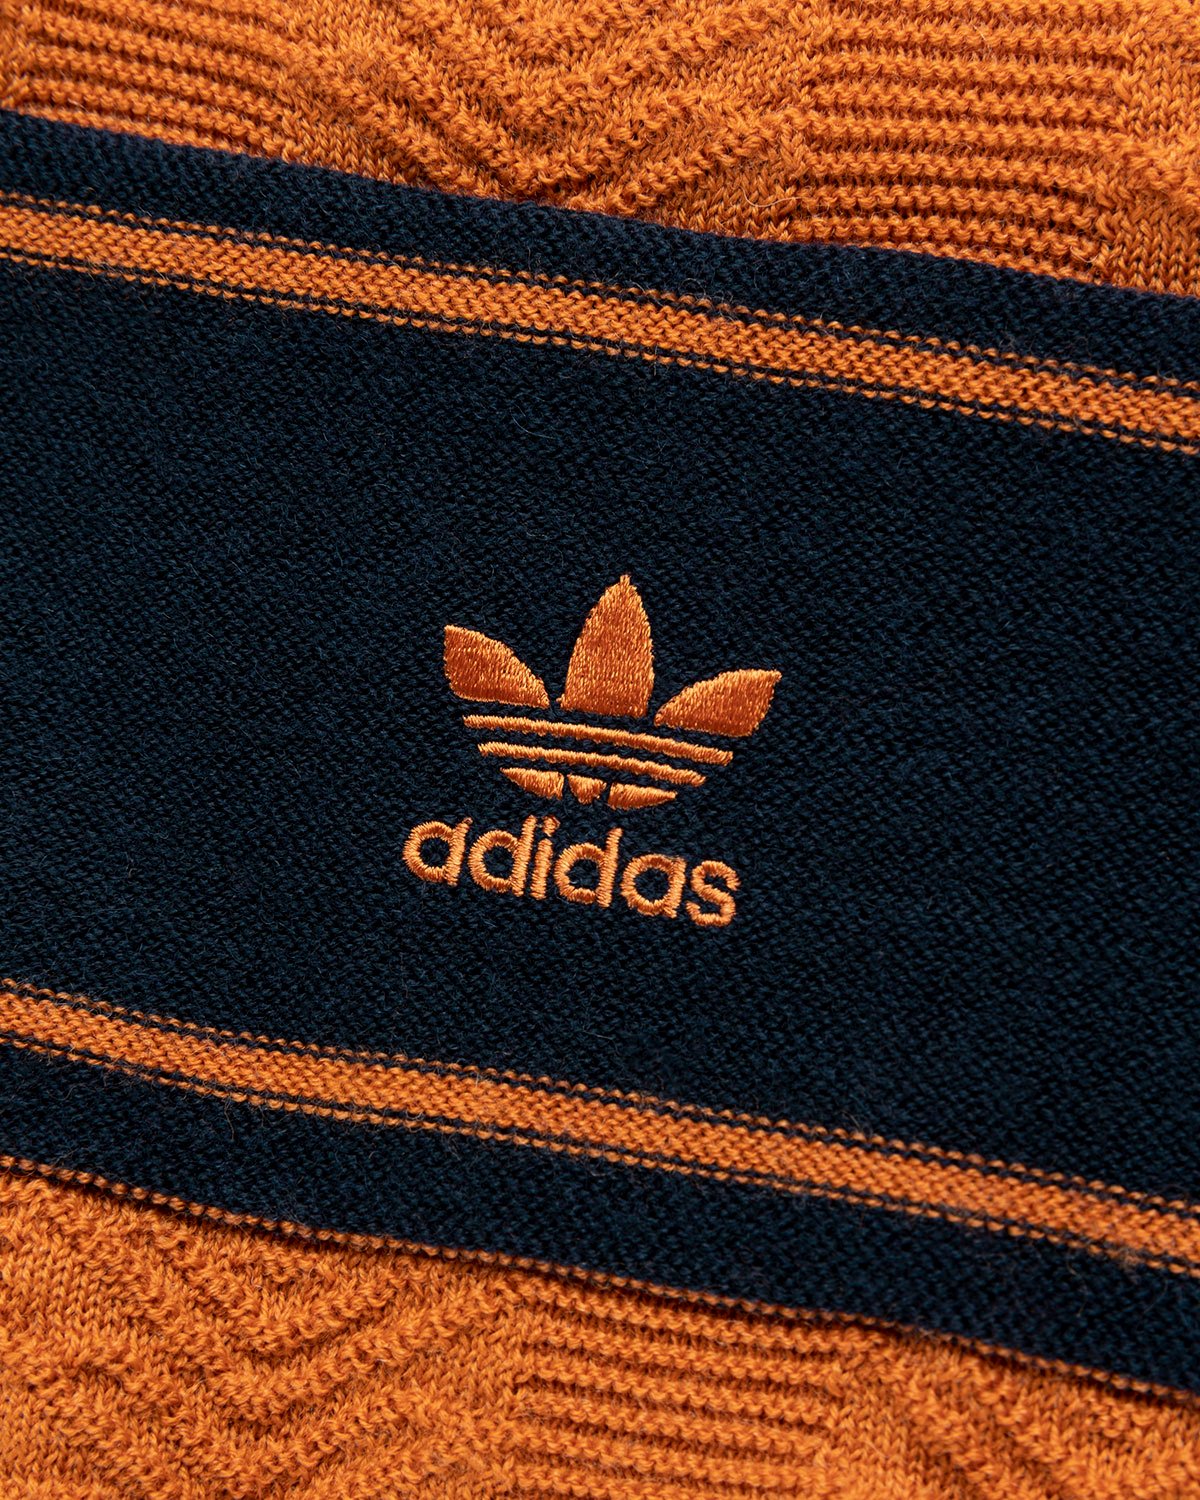 Adidas x Wales Bonner - Knit Longsleeve - Clothing - Orange - Image 4